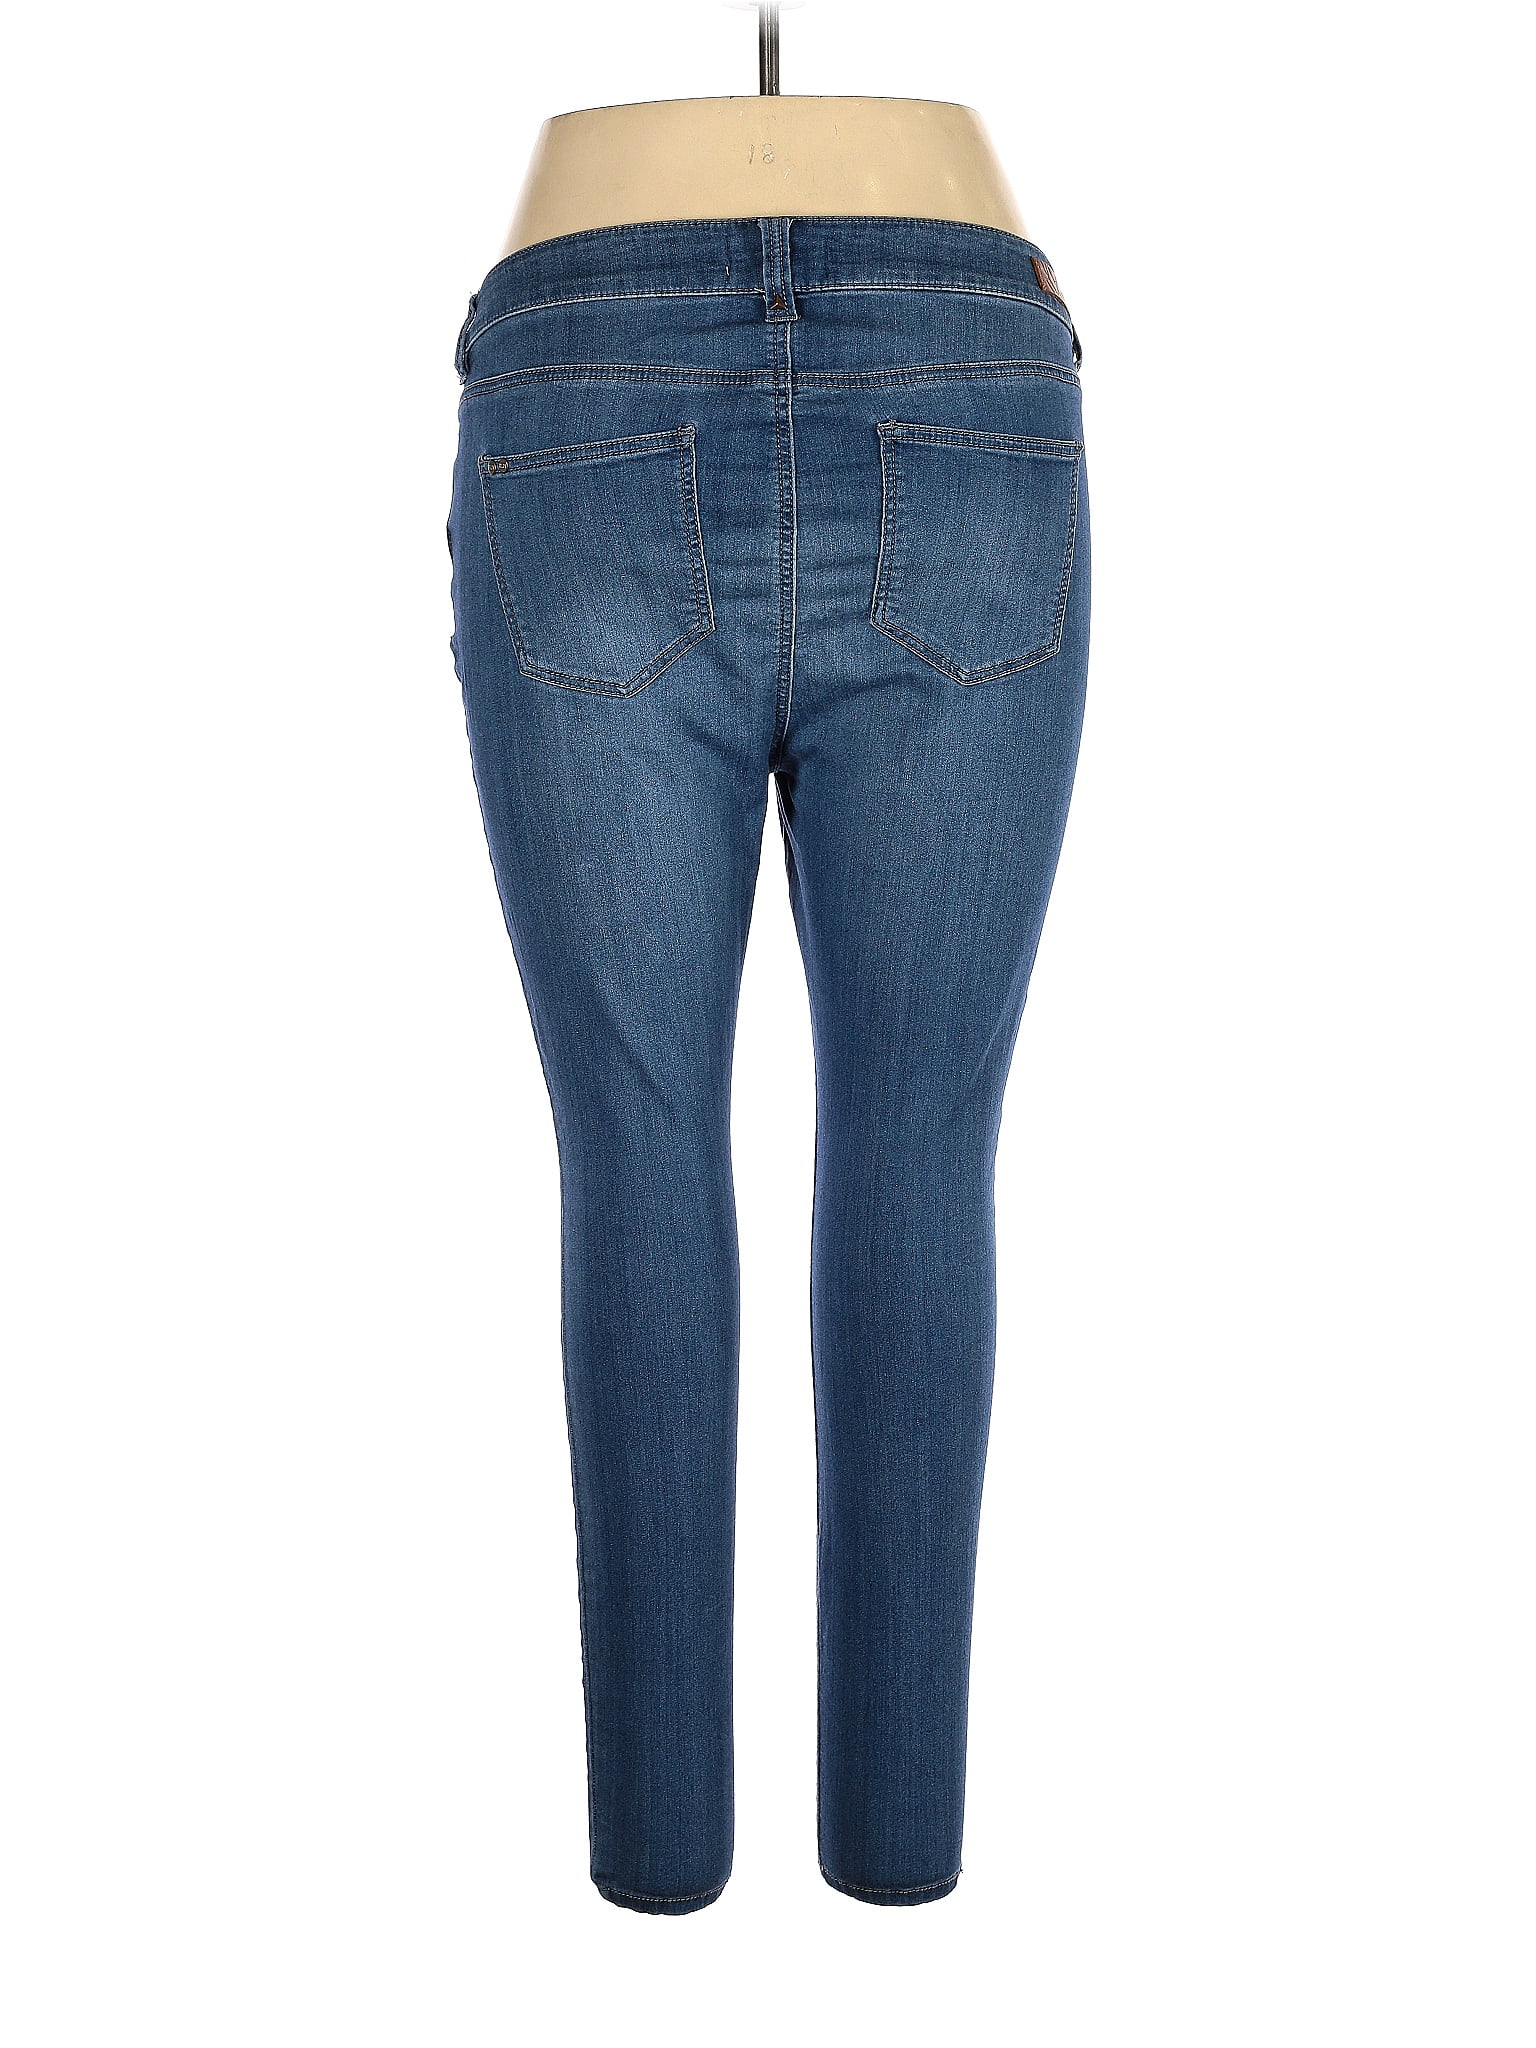 RWN By Rawan Womens Jeans Size 18 Blue Denim Medium Wash Cropped